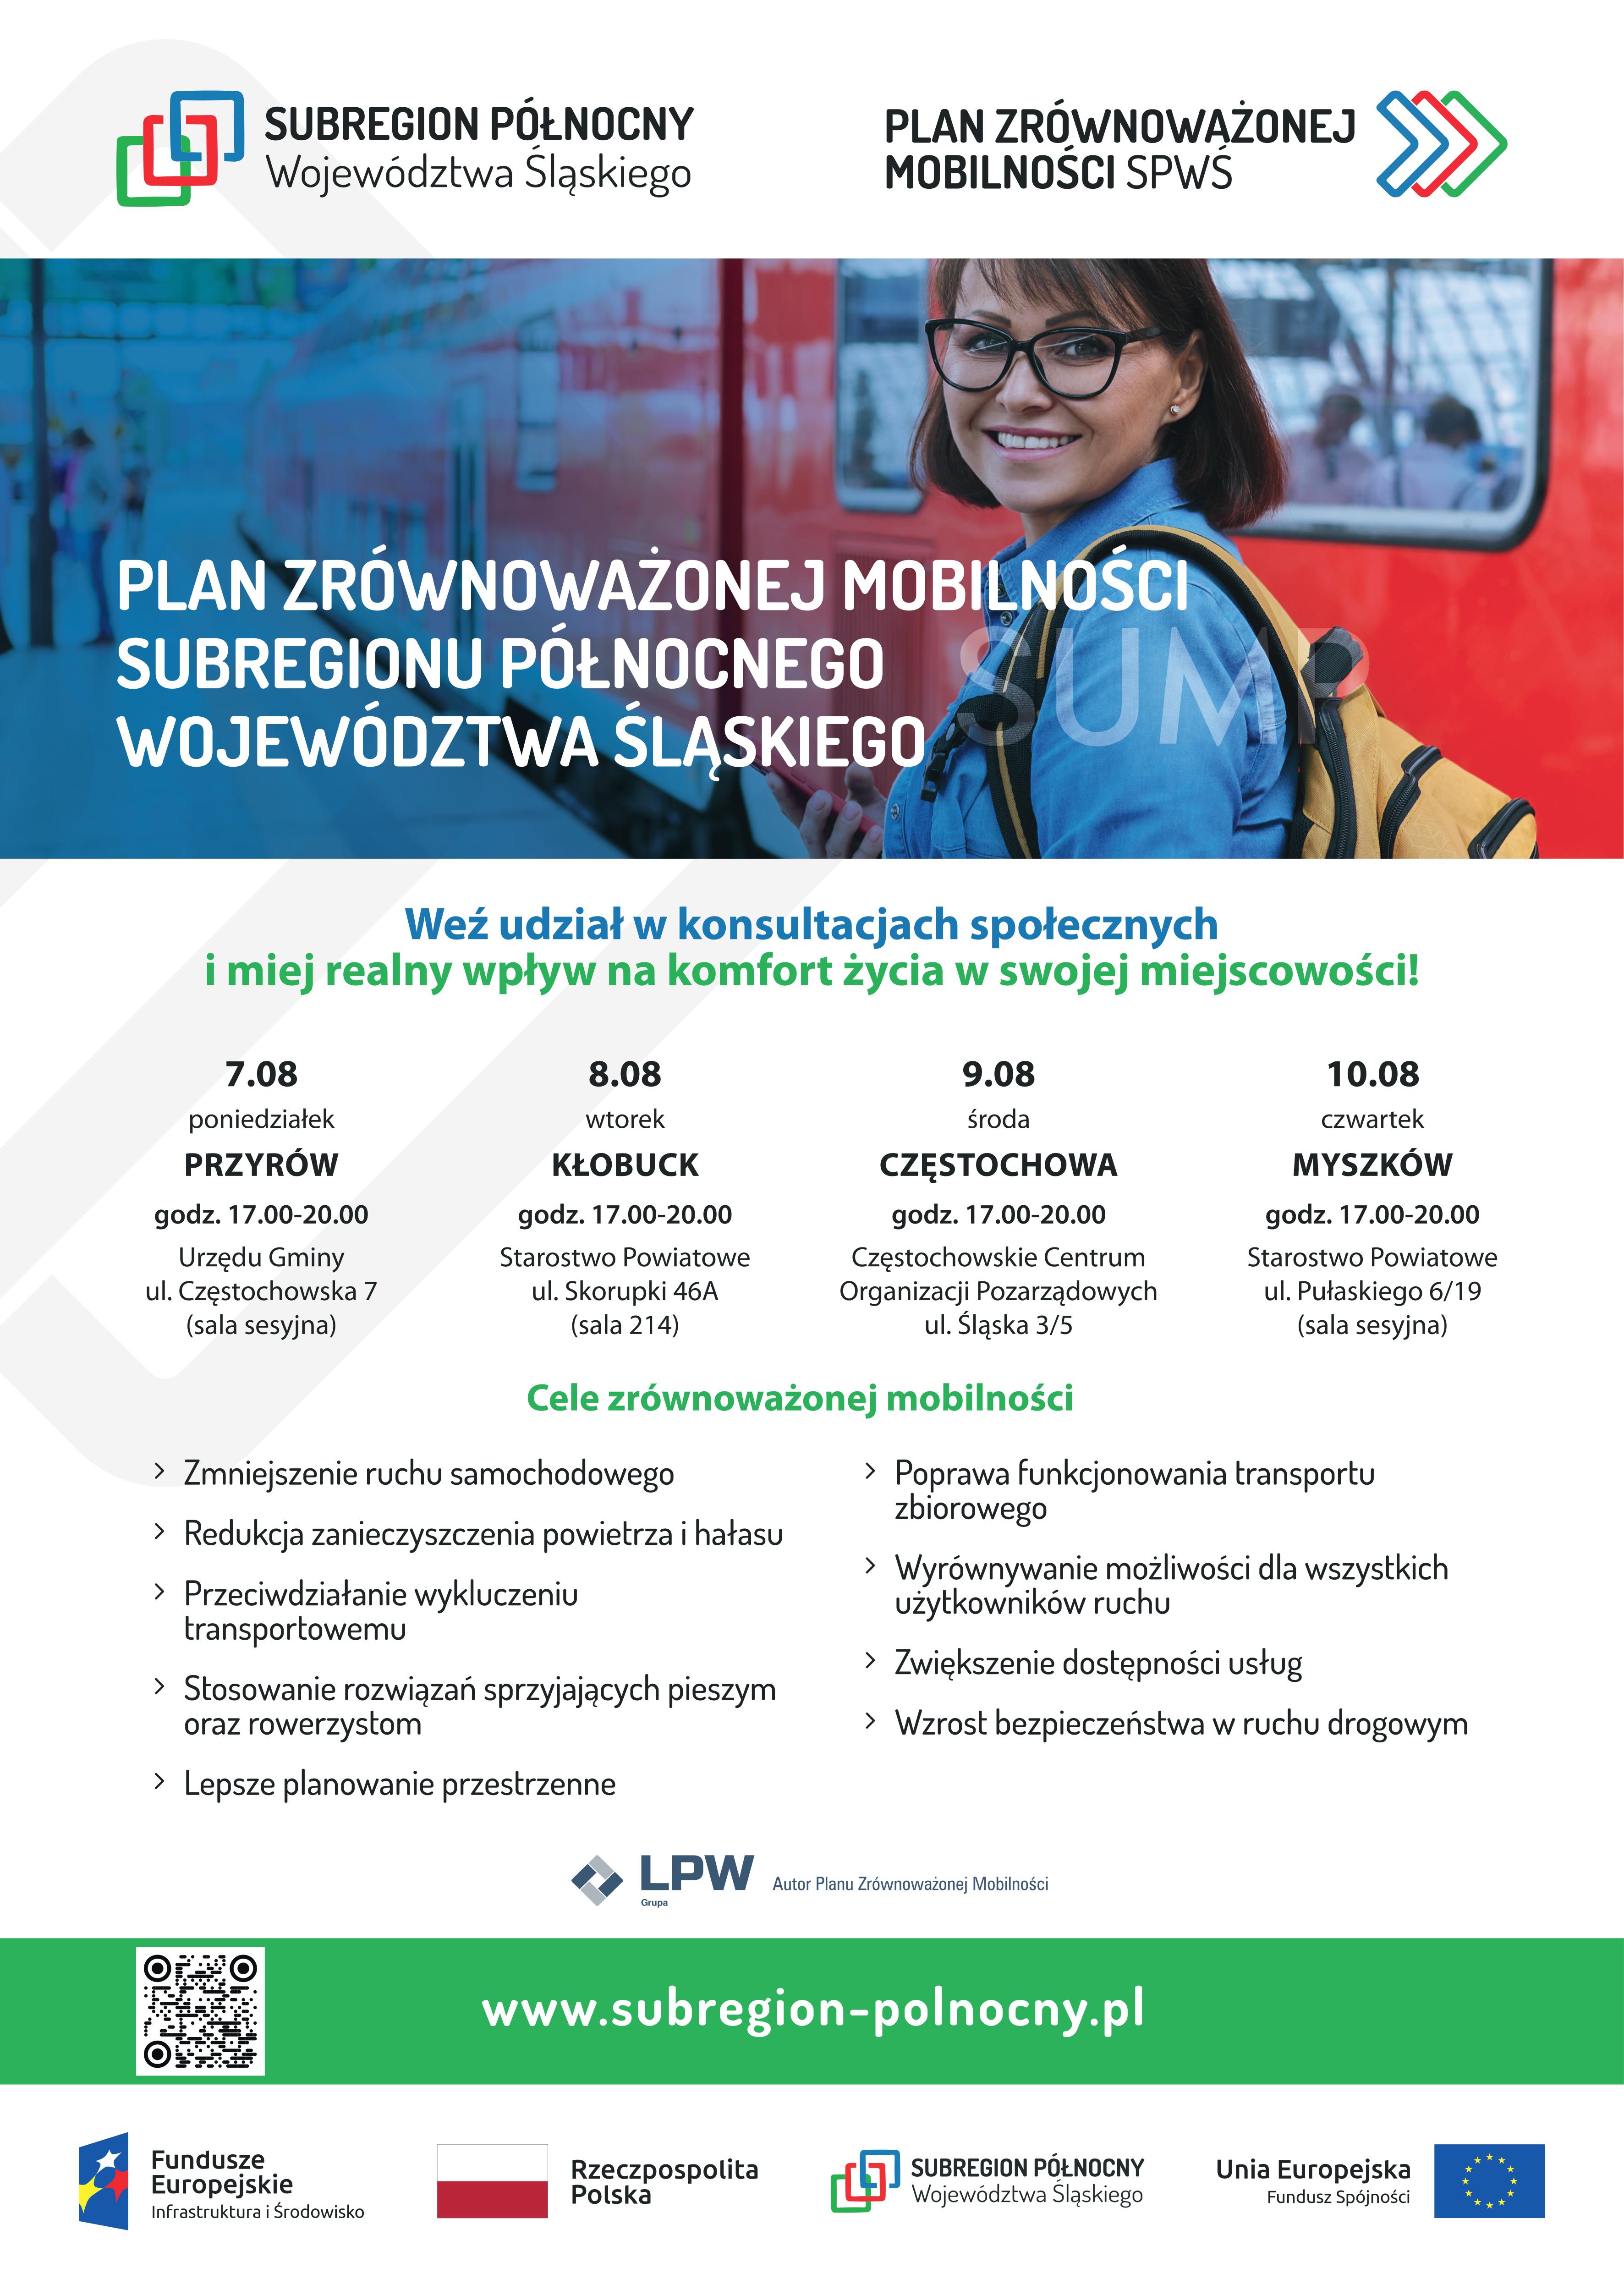 Plakat promujący konsultacje społeczne  Planu Zrównoważonej Mobilności Subregionu Północnego Województwa Śląskiego.